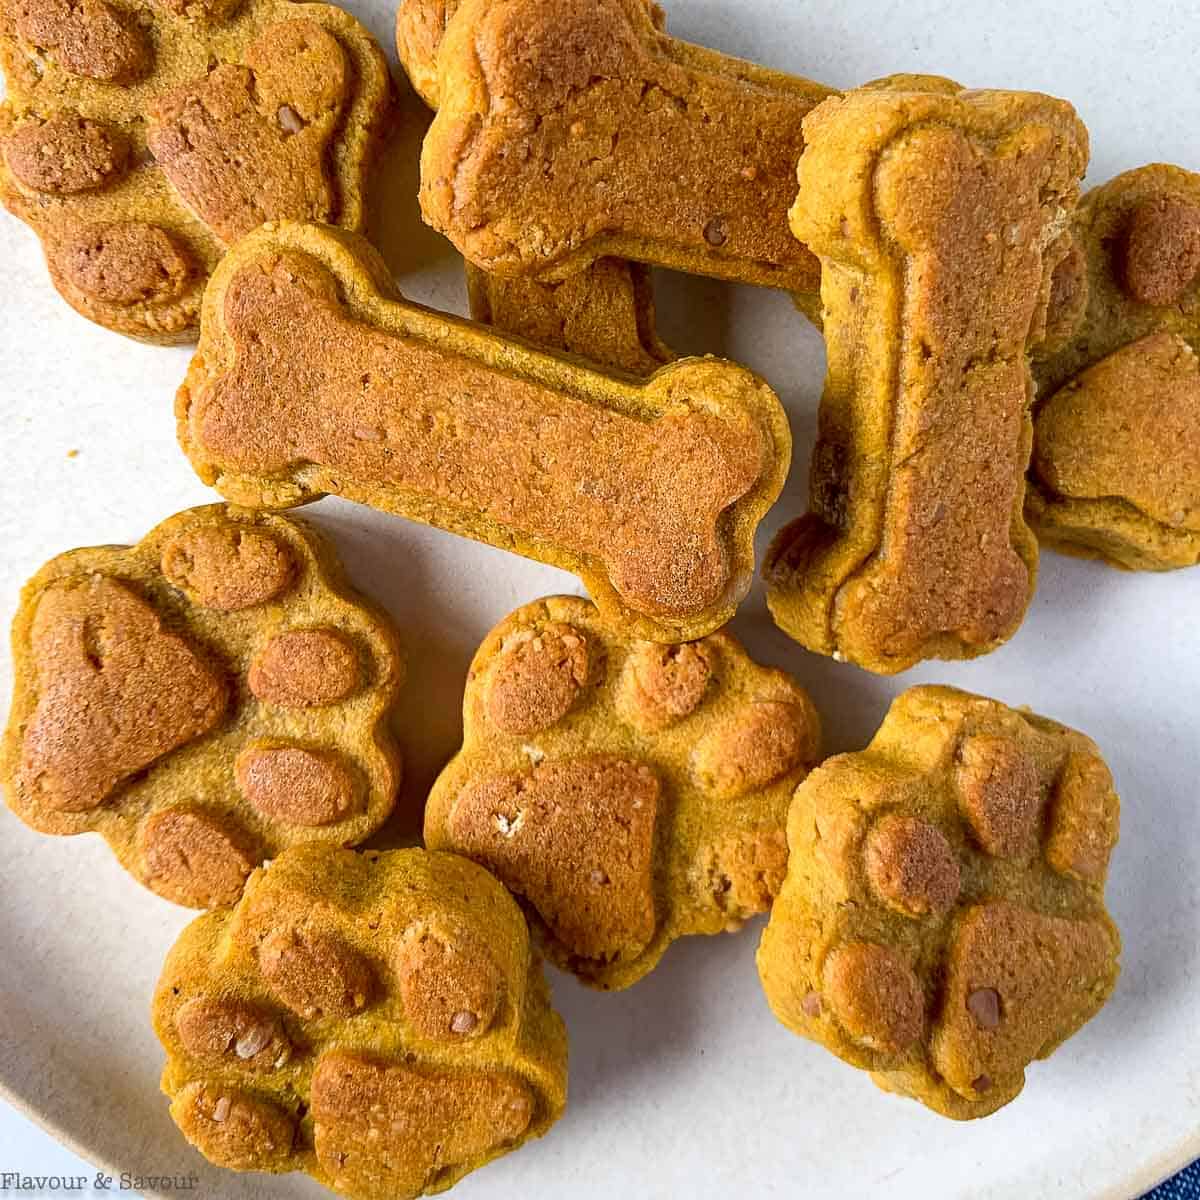 https://www.flavourandsavour.com/wp-content/uploads/2022/05/pumpkin-peanut-butter-dog-treats-in-a-pile.jpg